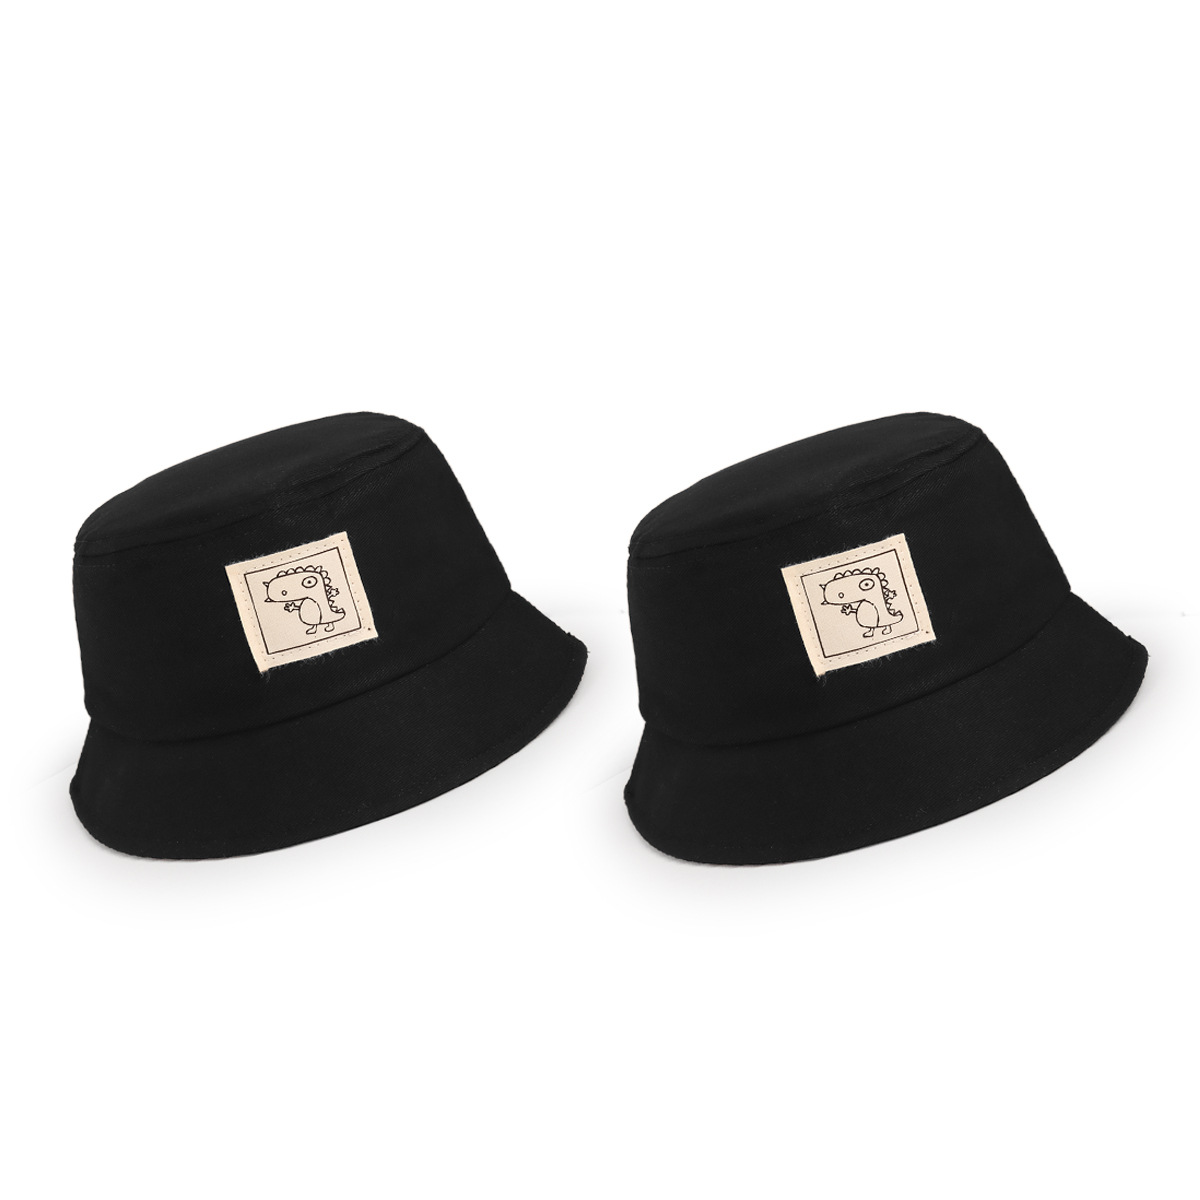 قبعة جديدة كنوز الذكور النسخة الكورية من أزياء التظليل display picture 1